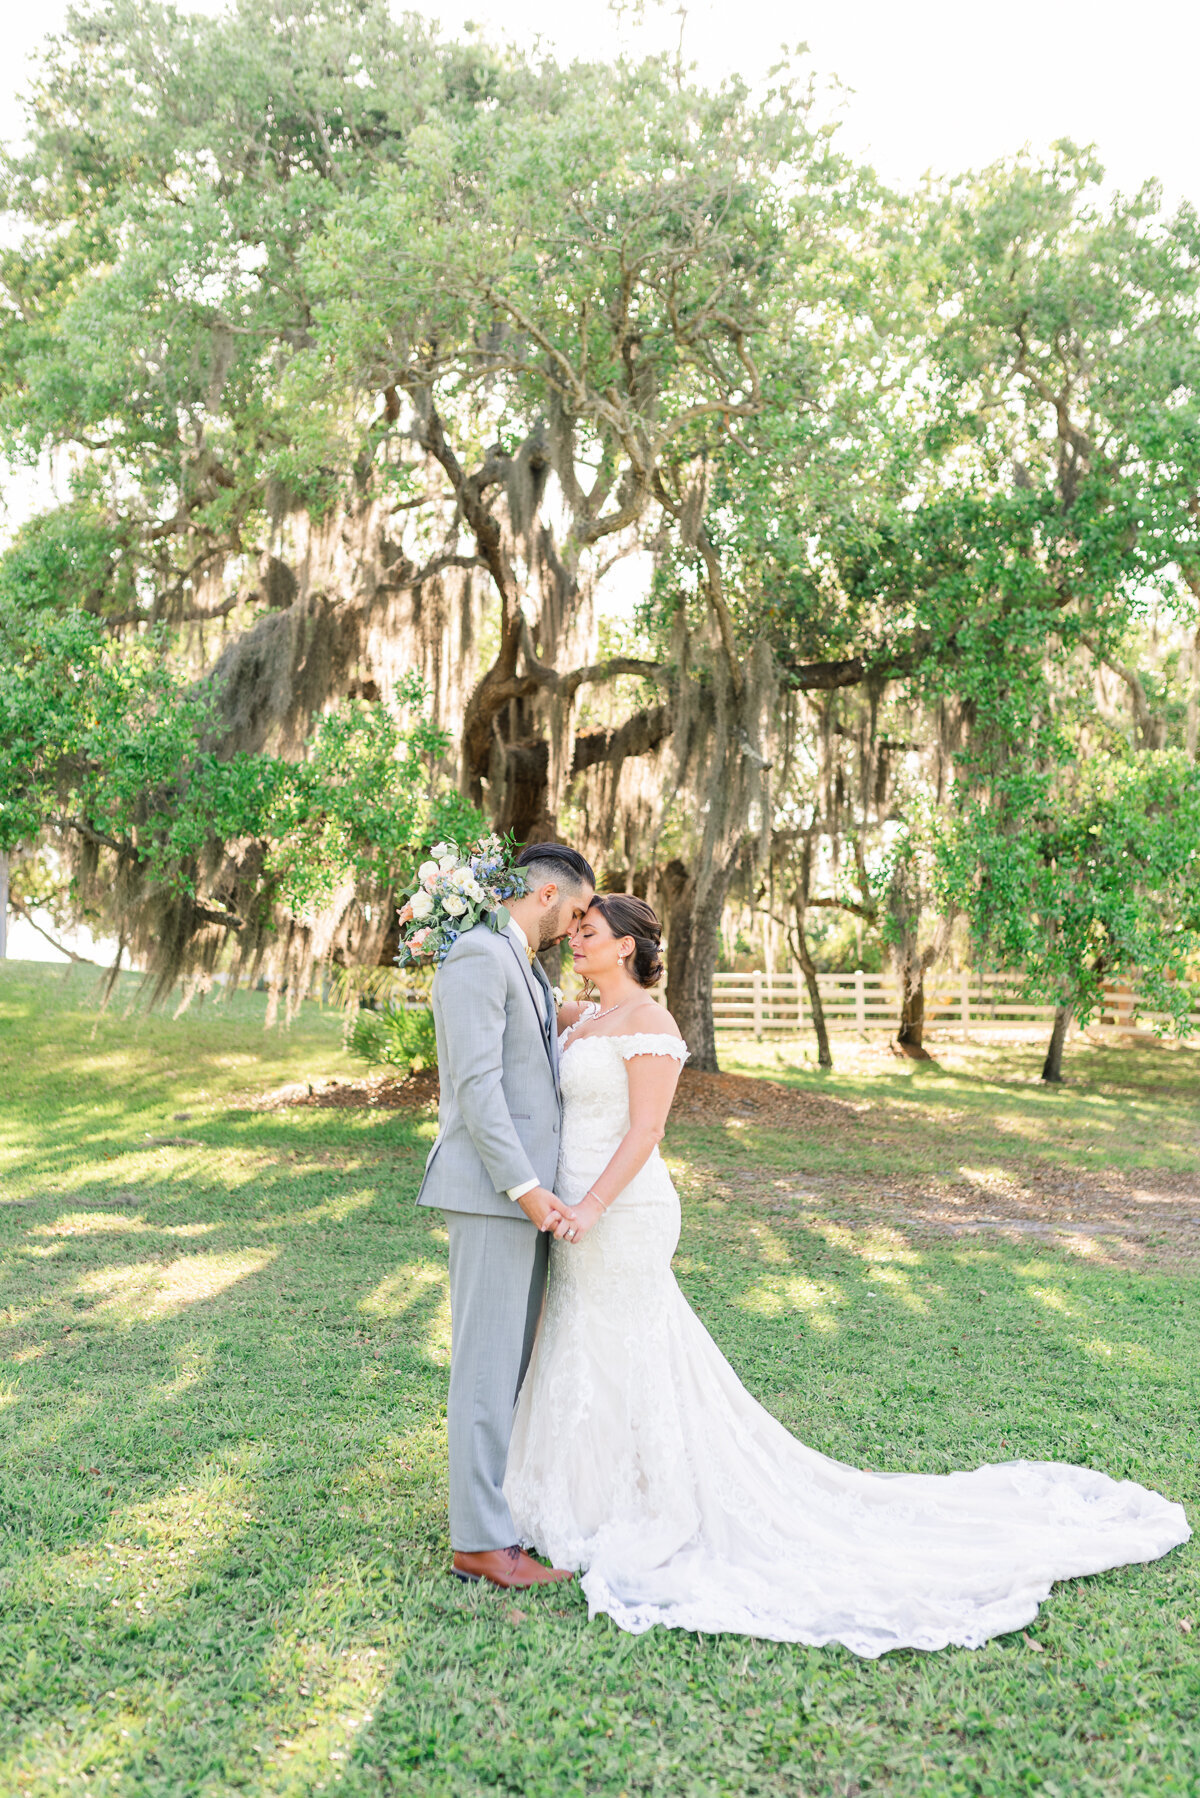 Mariah & Oron Up the Creek Farms Wedding | Lisa Marshall Photography